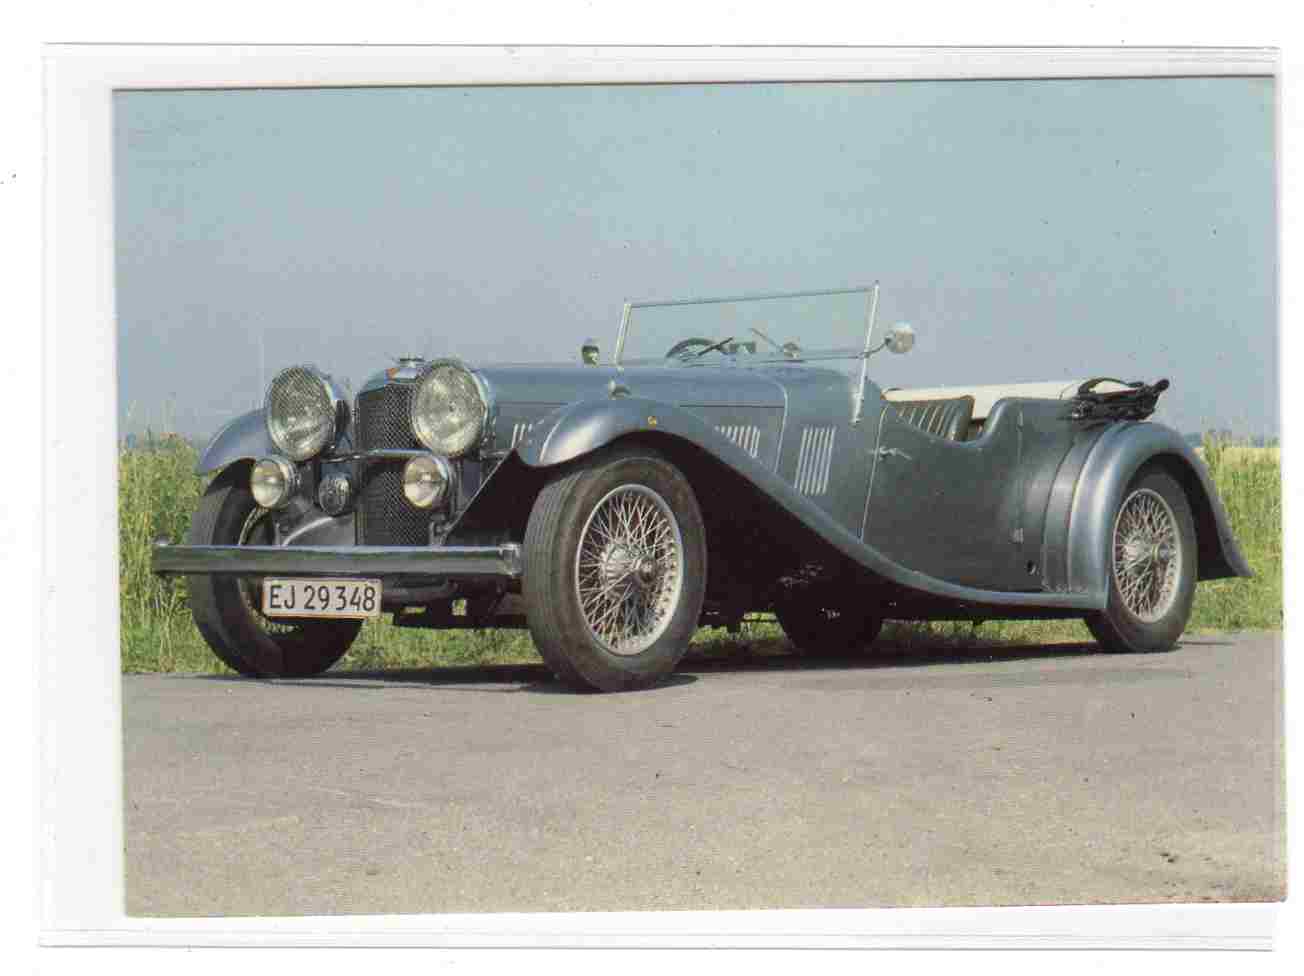 1934 Alvis model speed 20 England